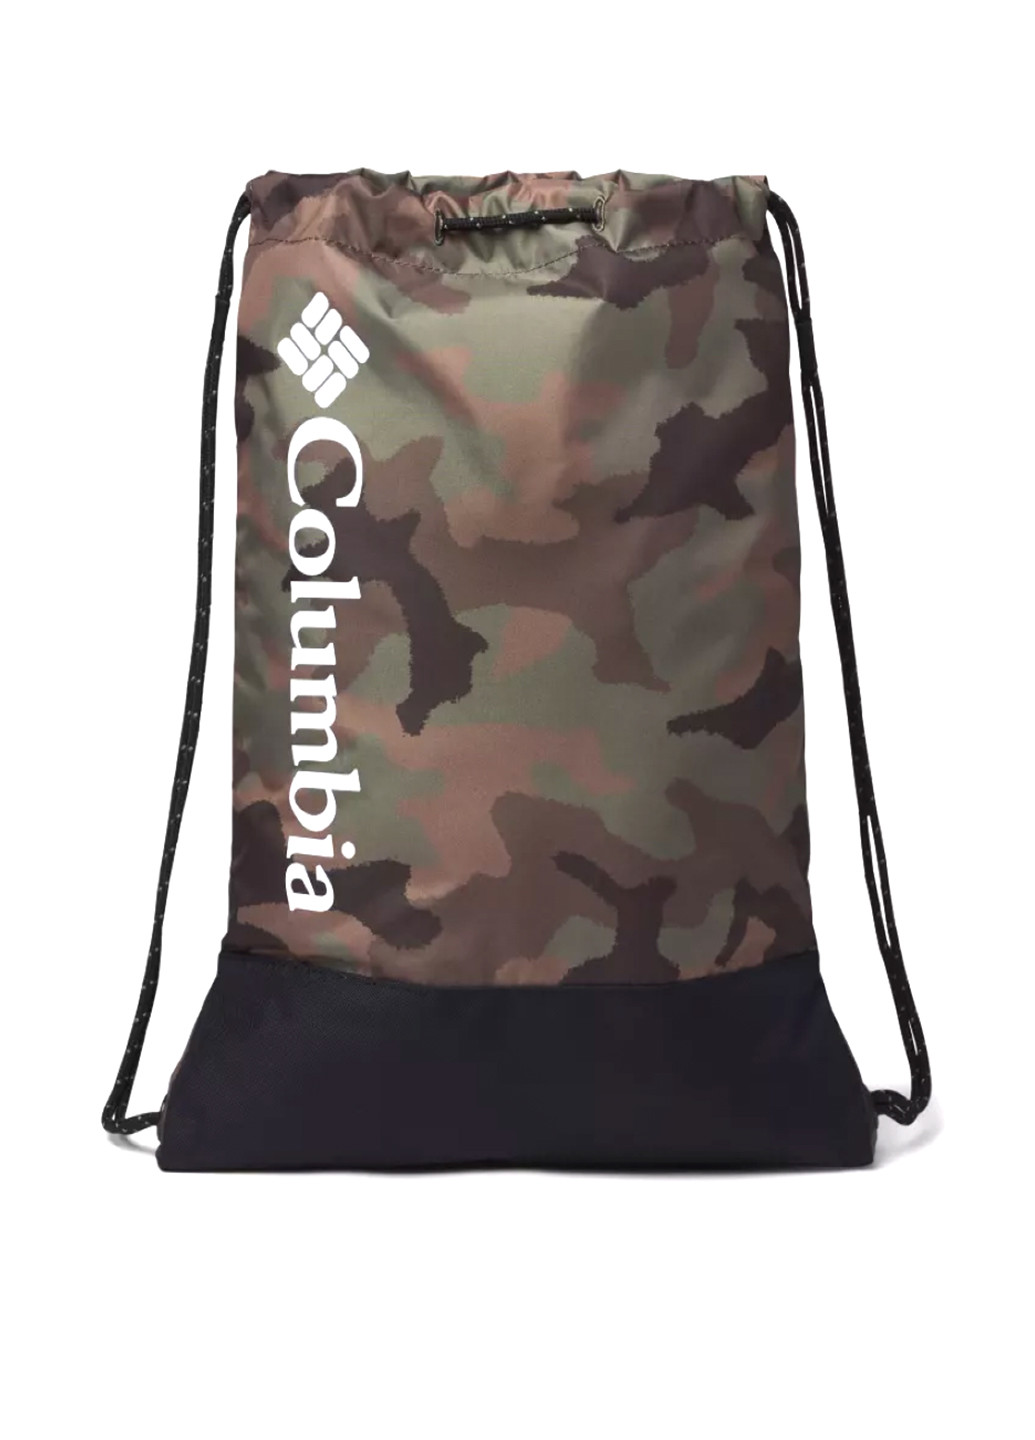 Сумка Columbia сумка-мешок камуфляжная хаки спортивная